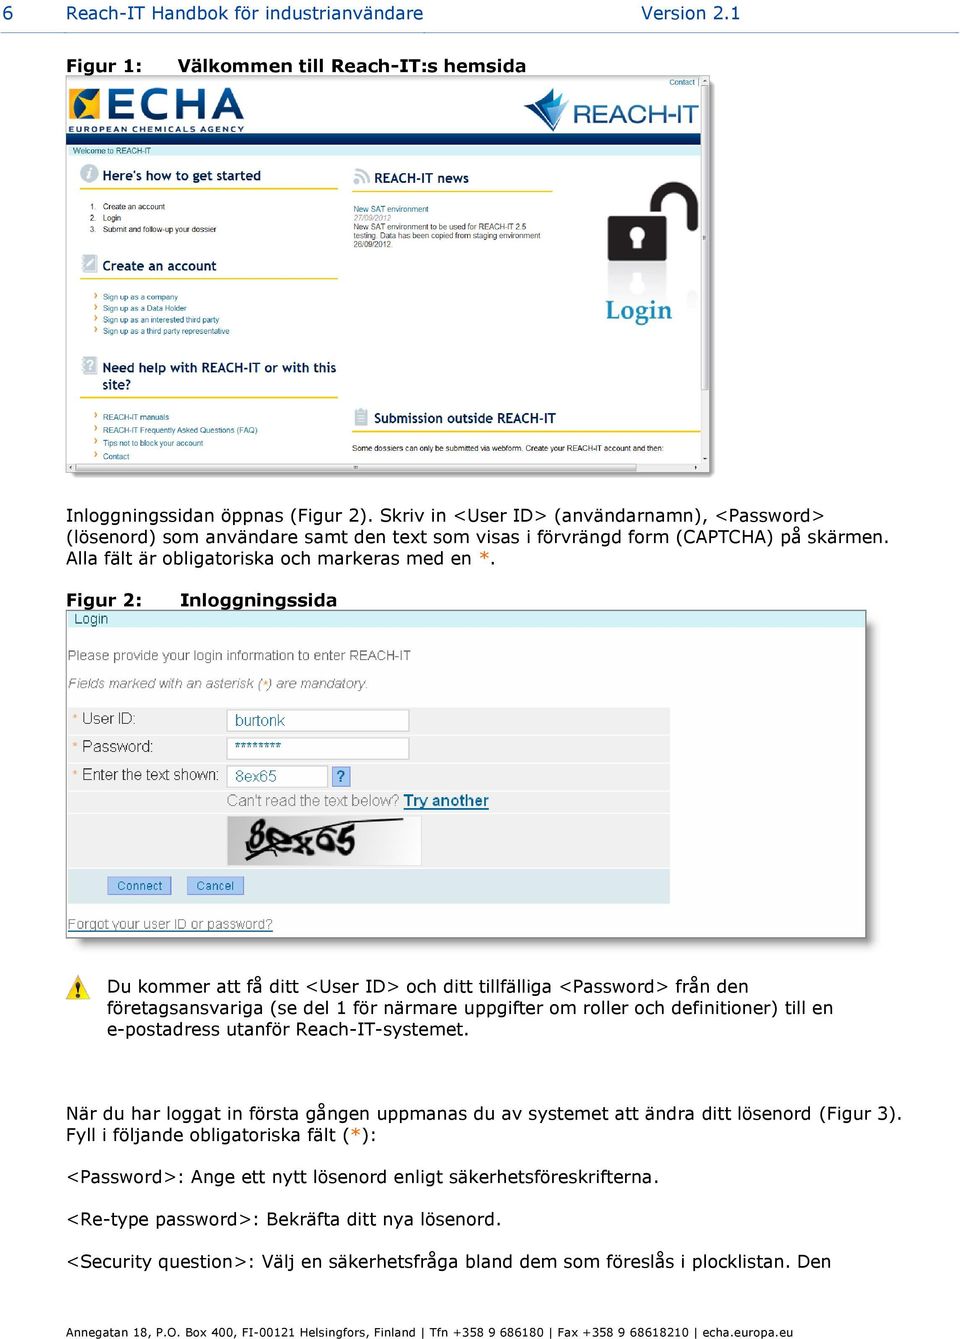 Figur 2: Inloggningssida Du kommer att få ditt <User ID> och ditt tillfälliga <Password> från den företagsansvariga (se del 1 för närmare uppgifter om roller och definitioner) till en e-postadress